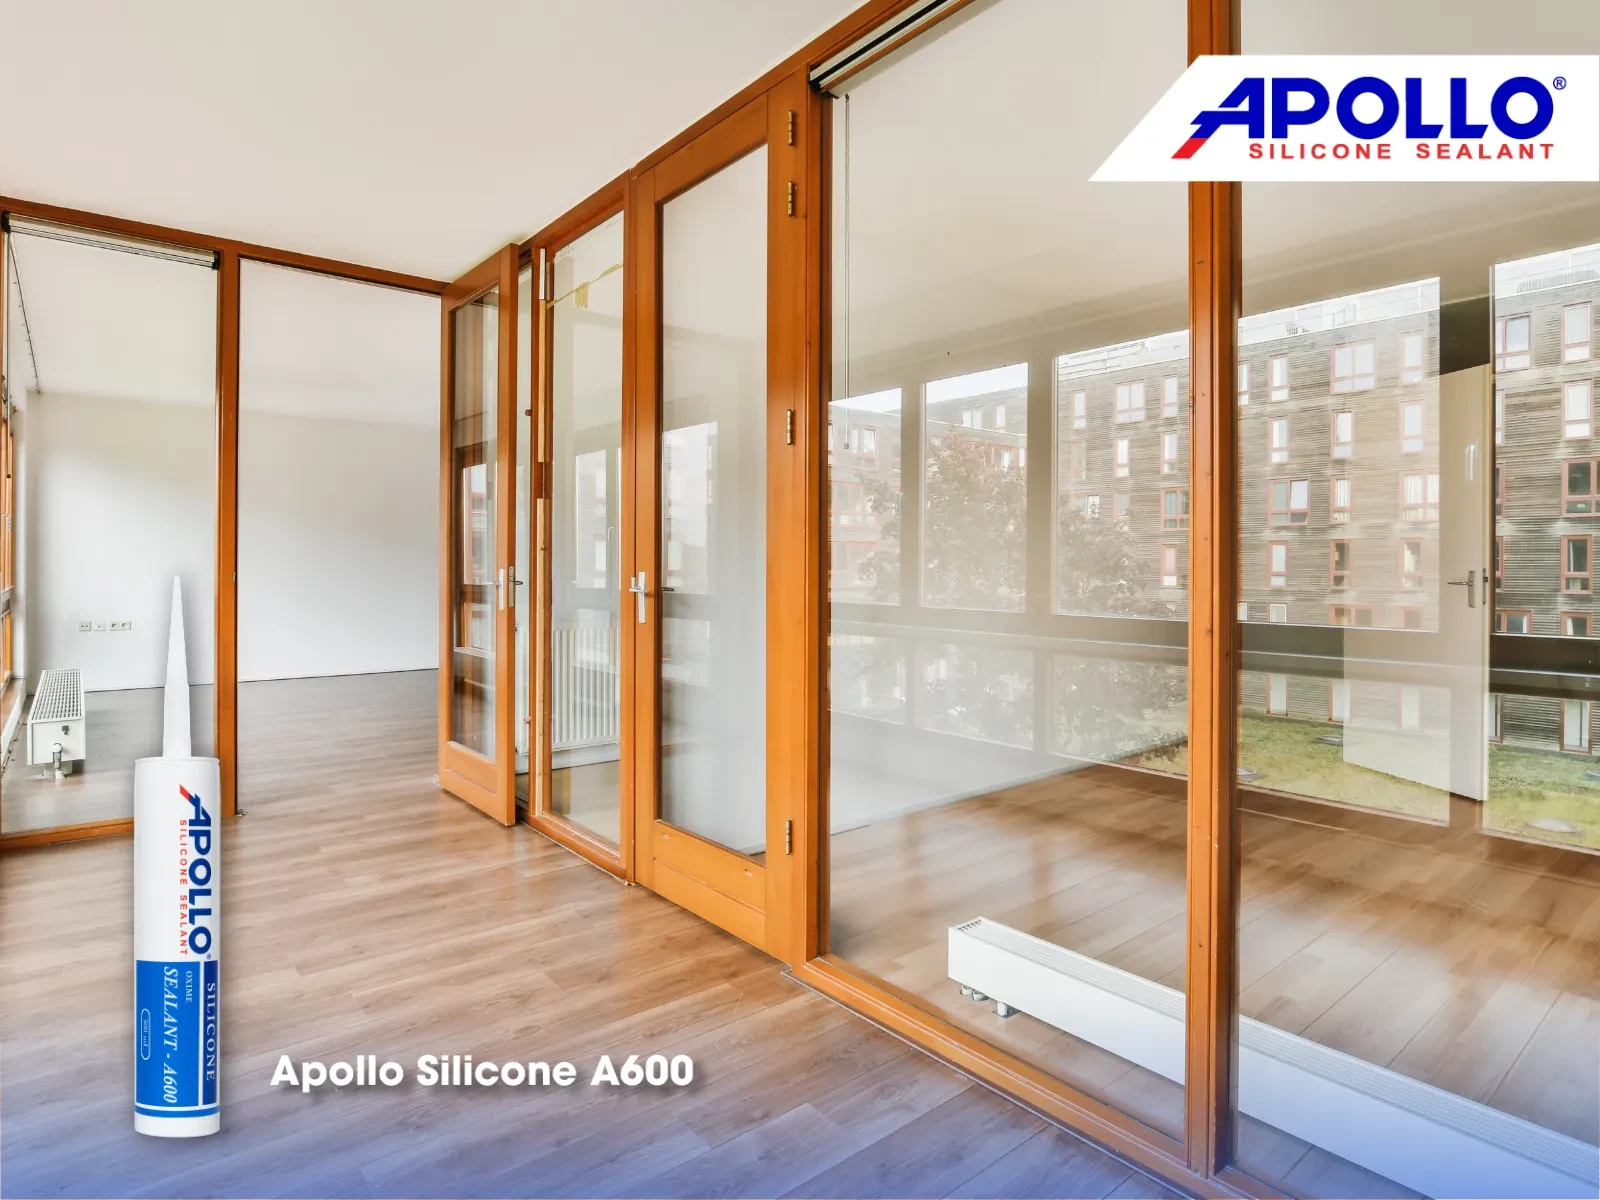 Apollo Silicone là lựa chọn hàng đầu đối với các dự án thi công cửa nhôm kính